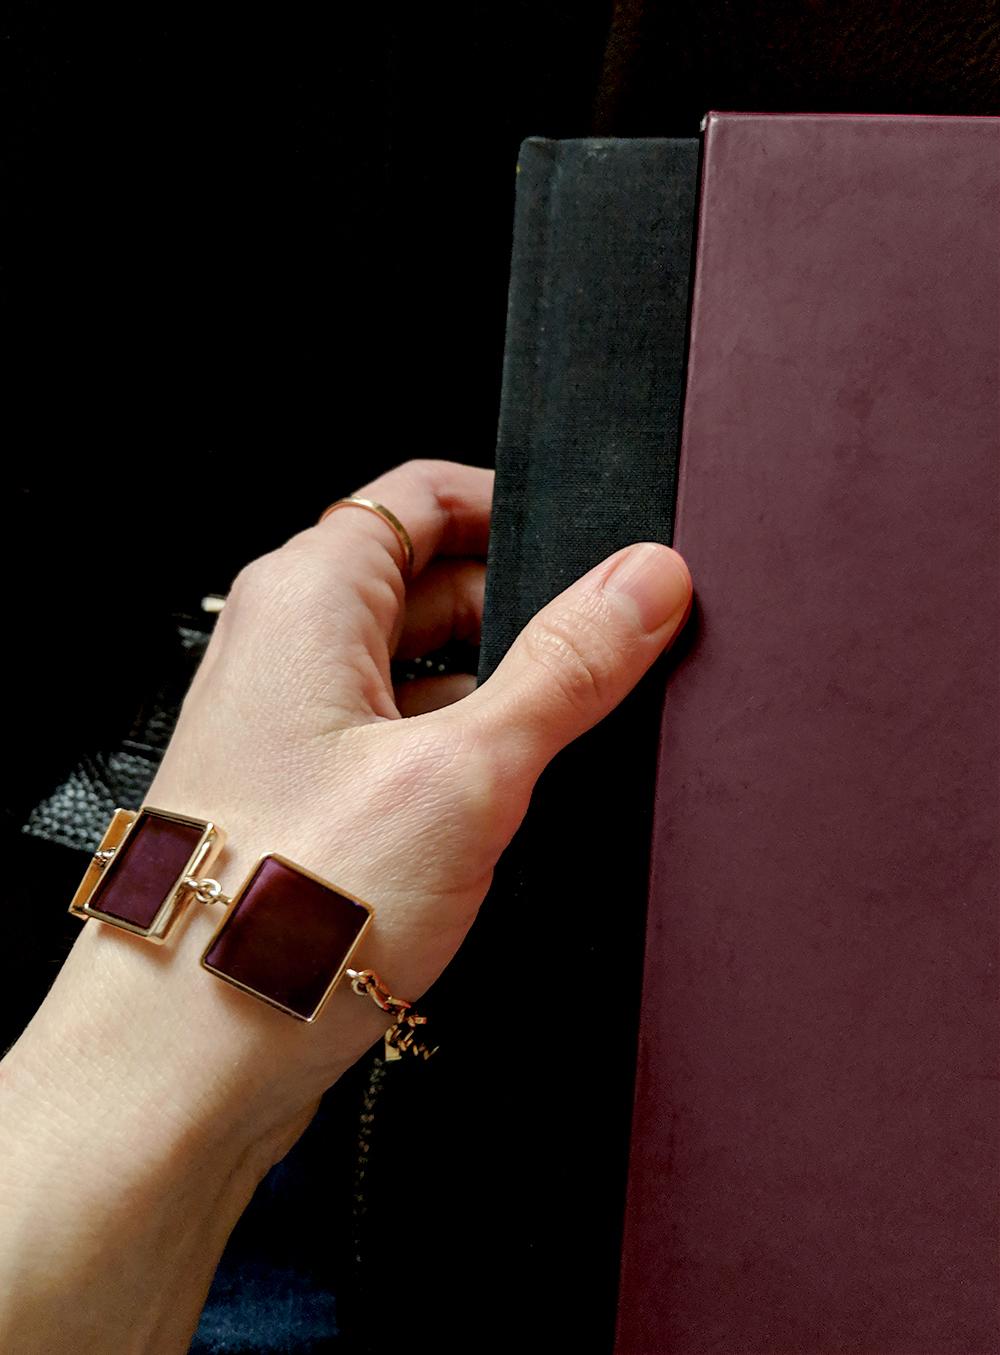 Ce bracelet à maillons contemporain est en or rose 14 carats et présente sept améthystes cultivées de 15x15x3 mm. Il a été conçu par la peintre à l'huile Polya Medvedeva, basée à Berlin, et a été présenté dans Harper's Bazaar UA et Vogue UA.

Le